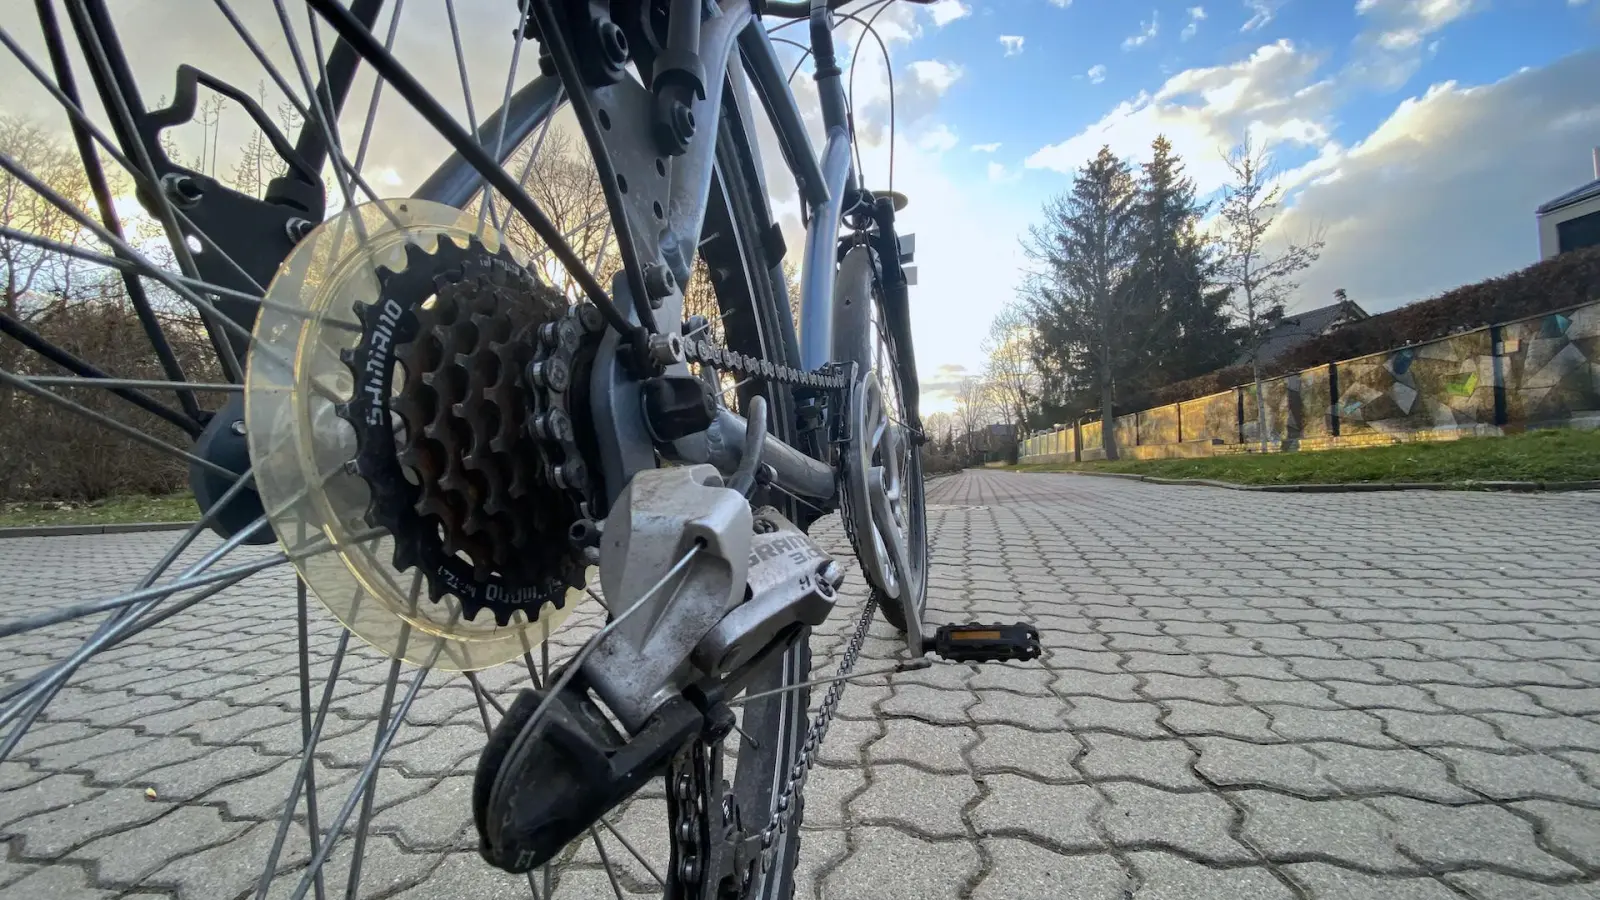 ADFC-Fahrradtest zeigt Lücken in Taucha - Stadtverwaltung ist am Thema dran (Foto: taucha-kompakt.de)